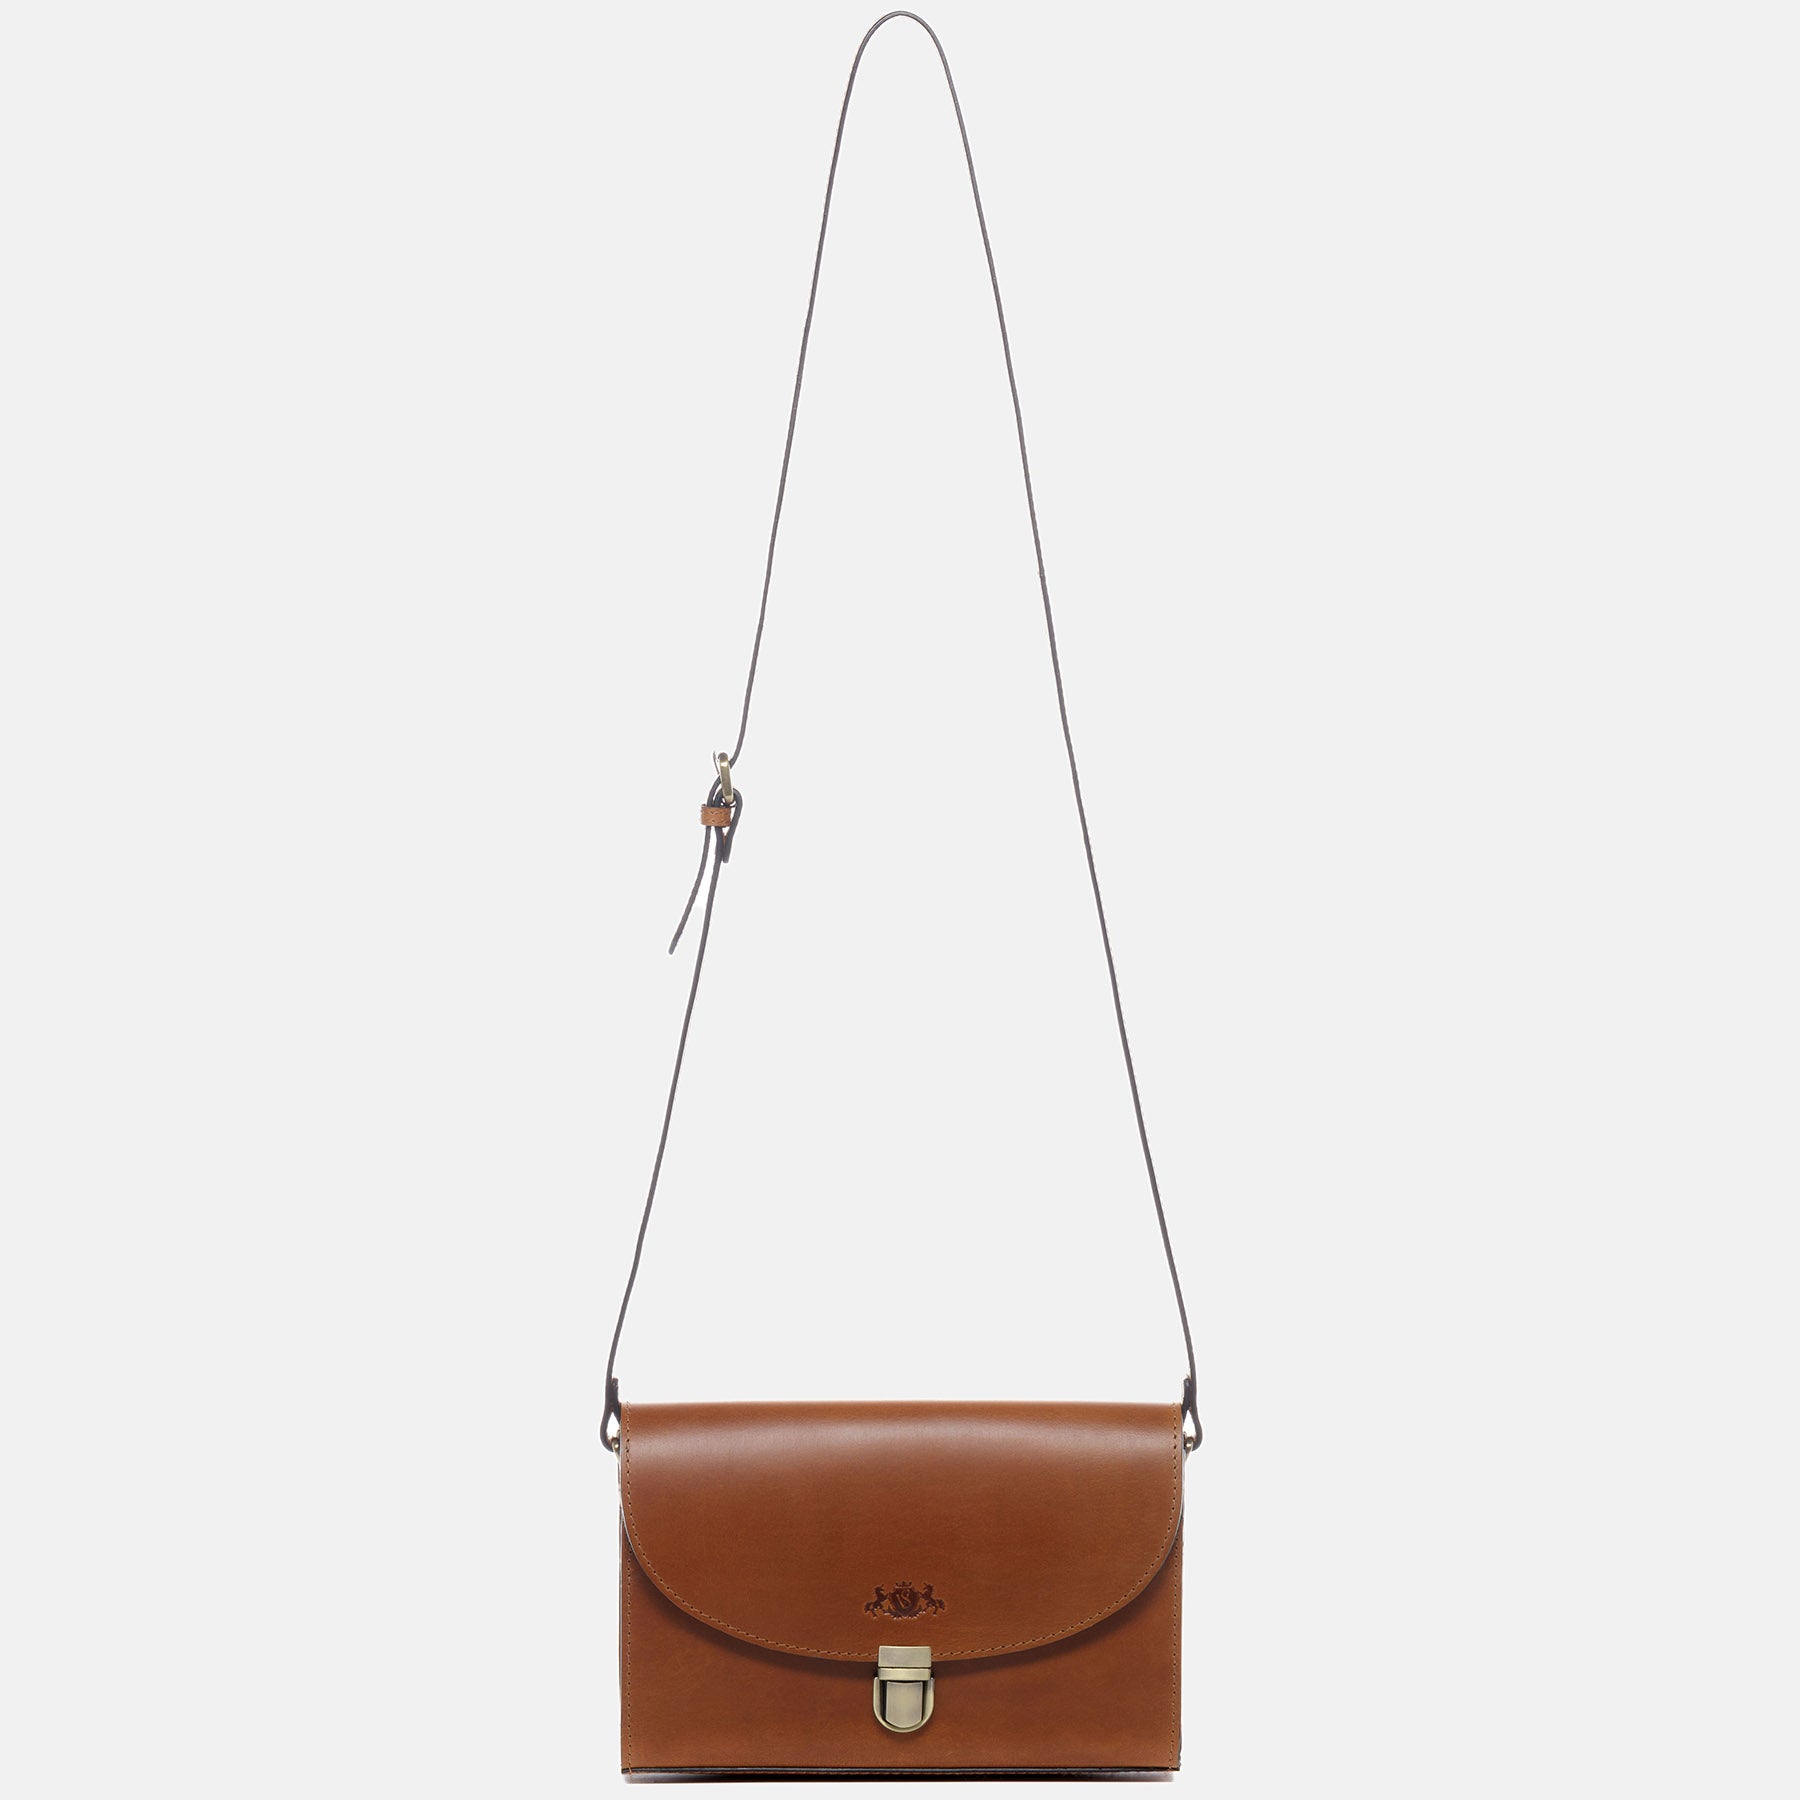 Shoulder bag ADELE saddle leather light brown